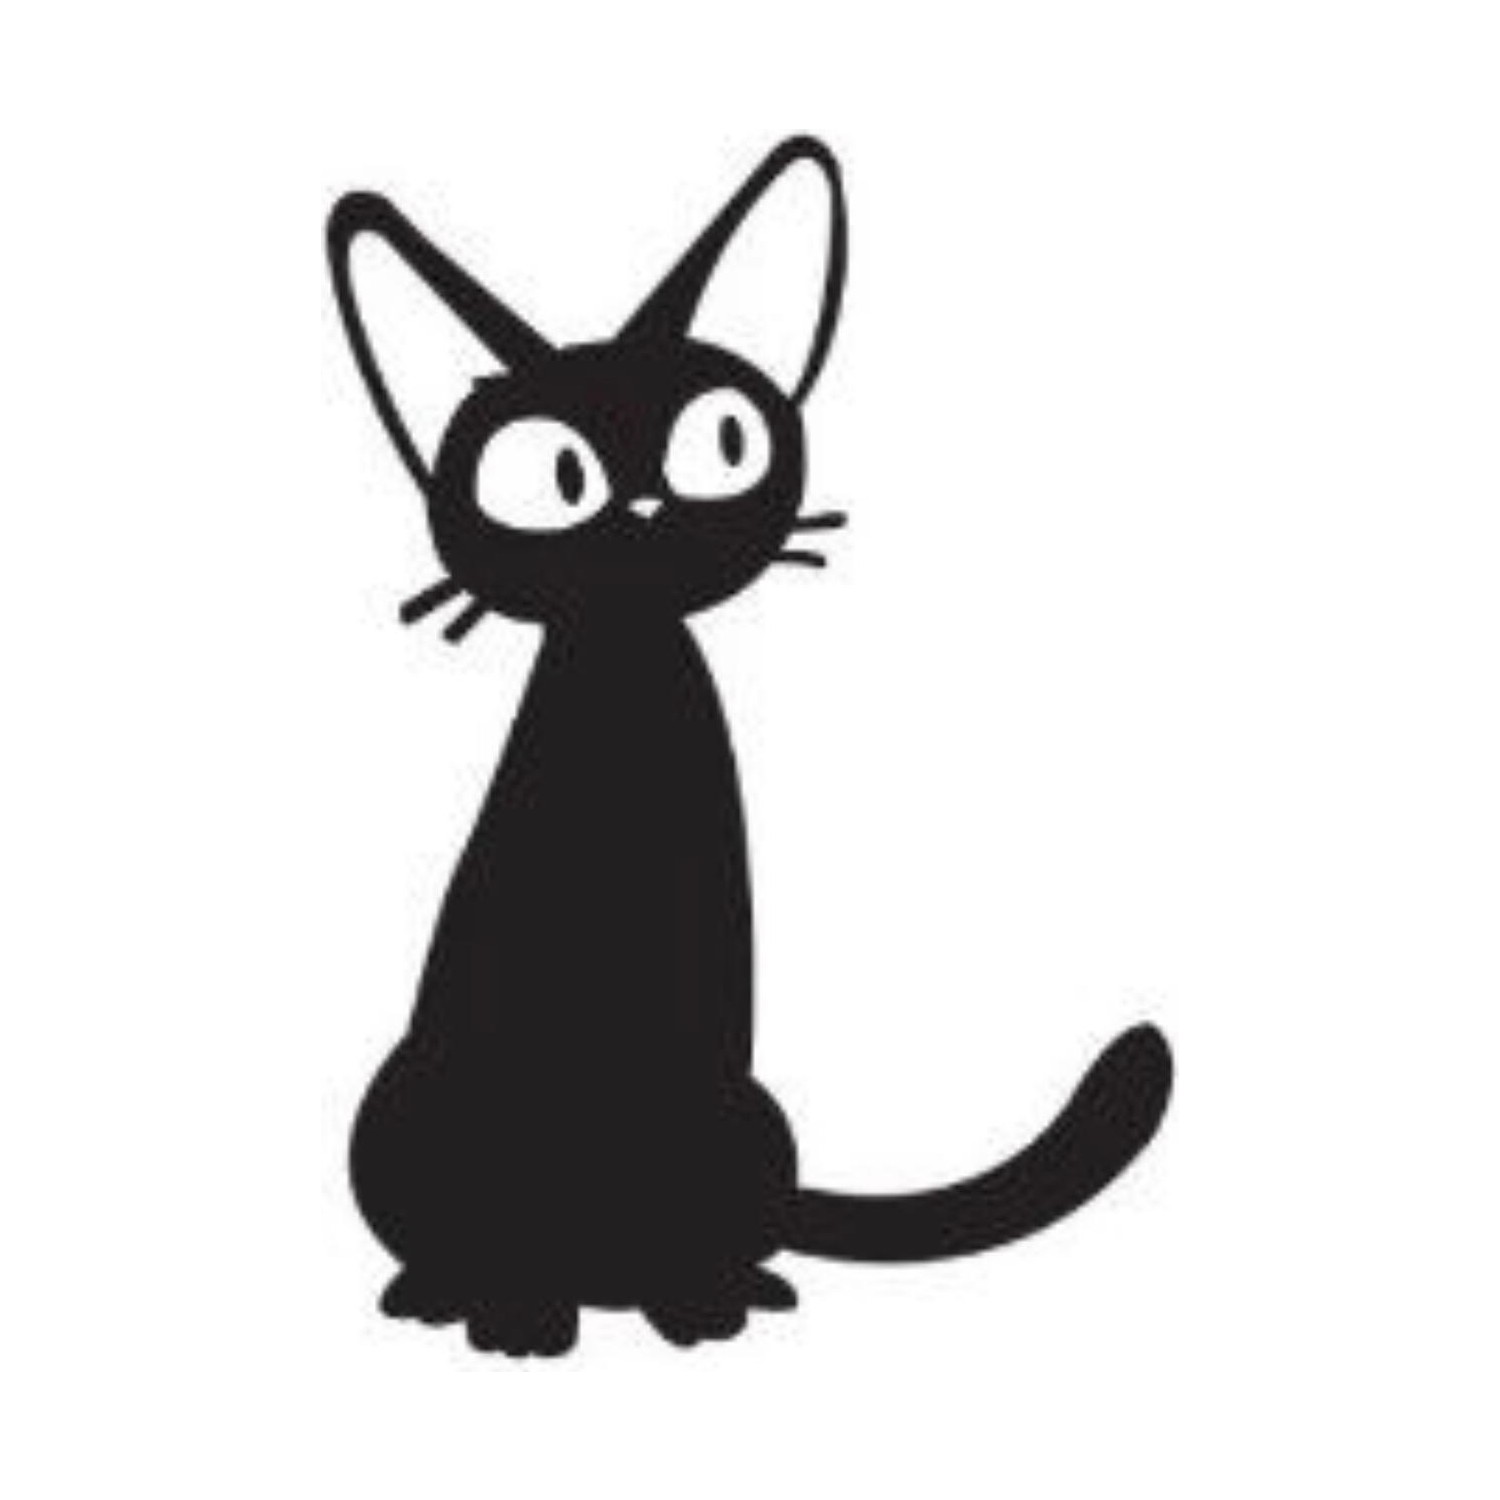 Areksan Düşünen Kedi Duvar Sticker Fiyatı Taksit Seçenekleri